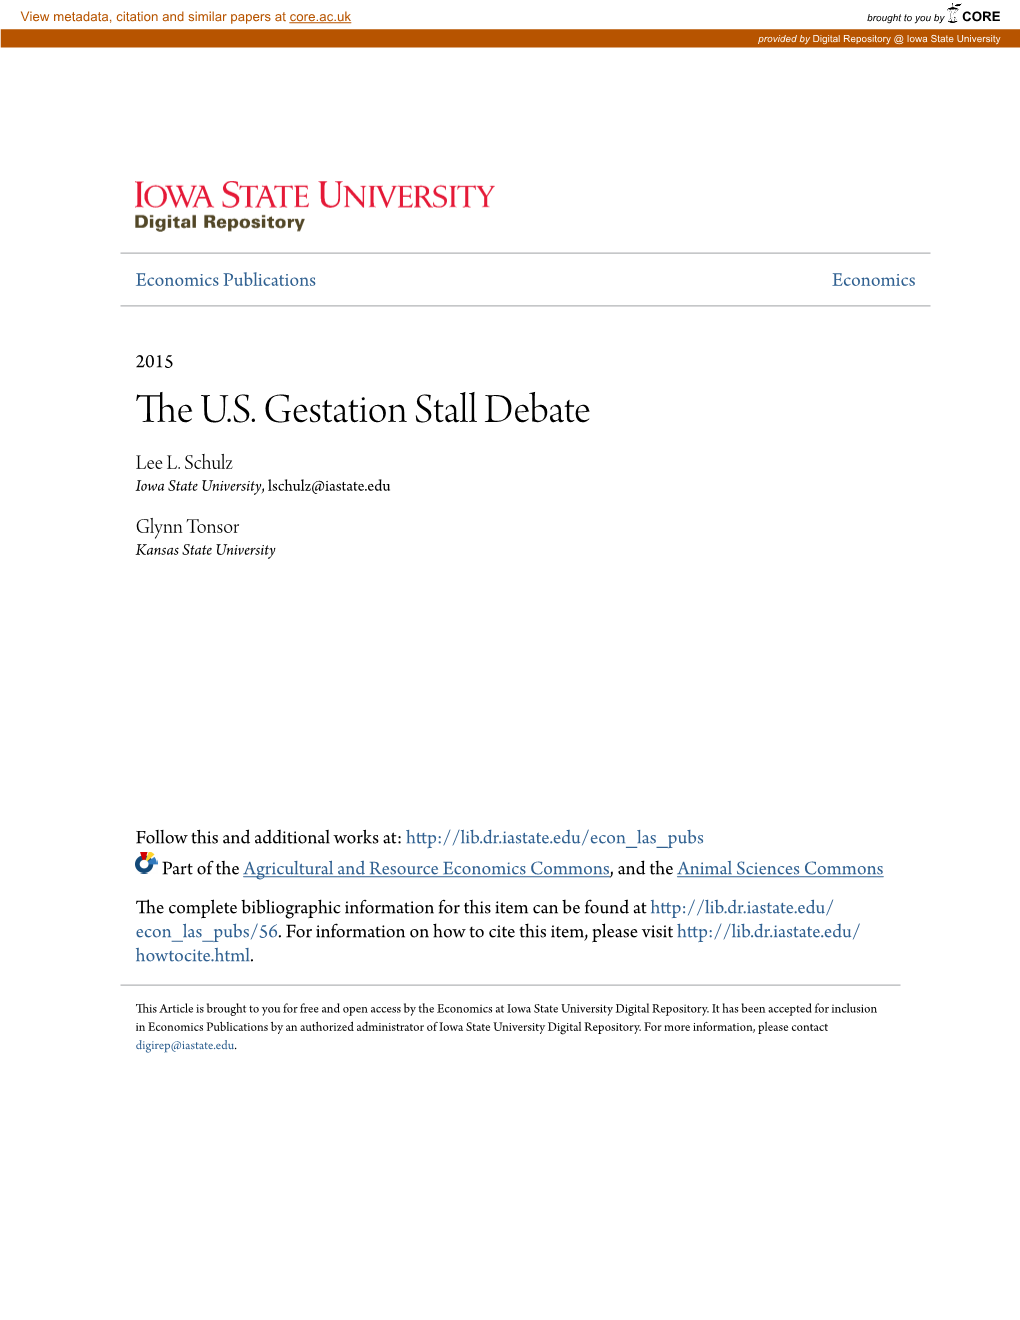 The U.S. Gestation Stall Debate Lee L